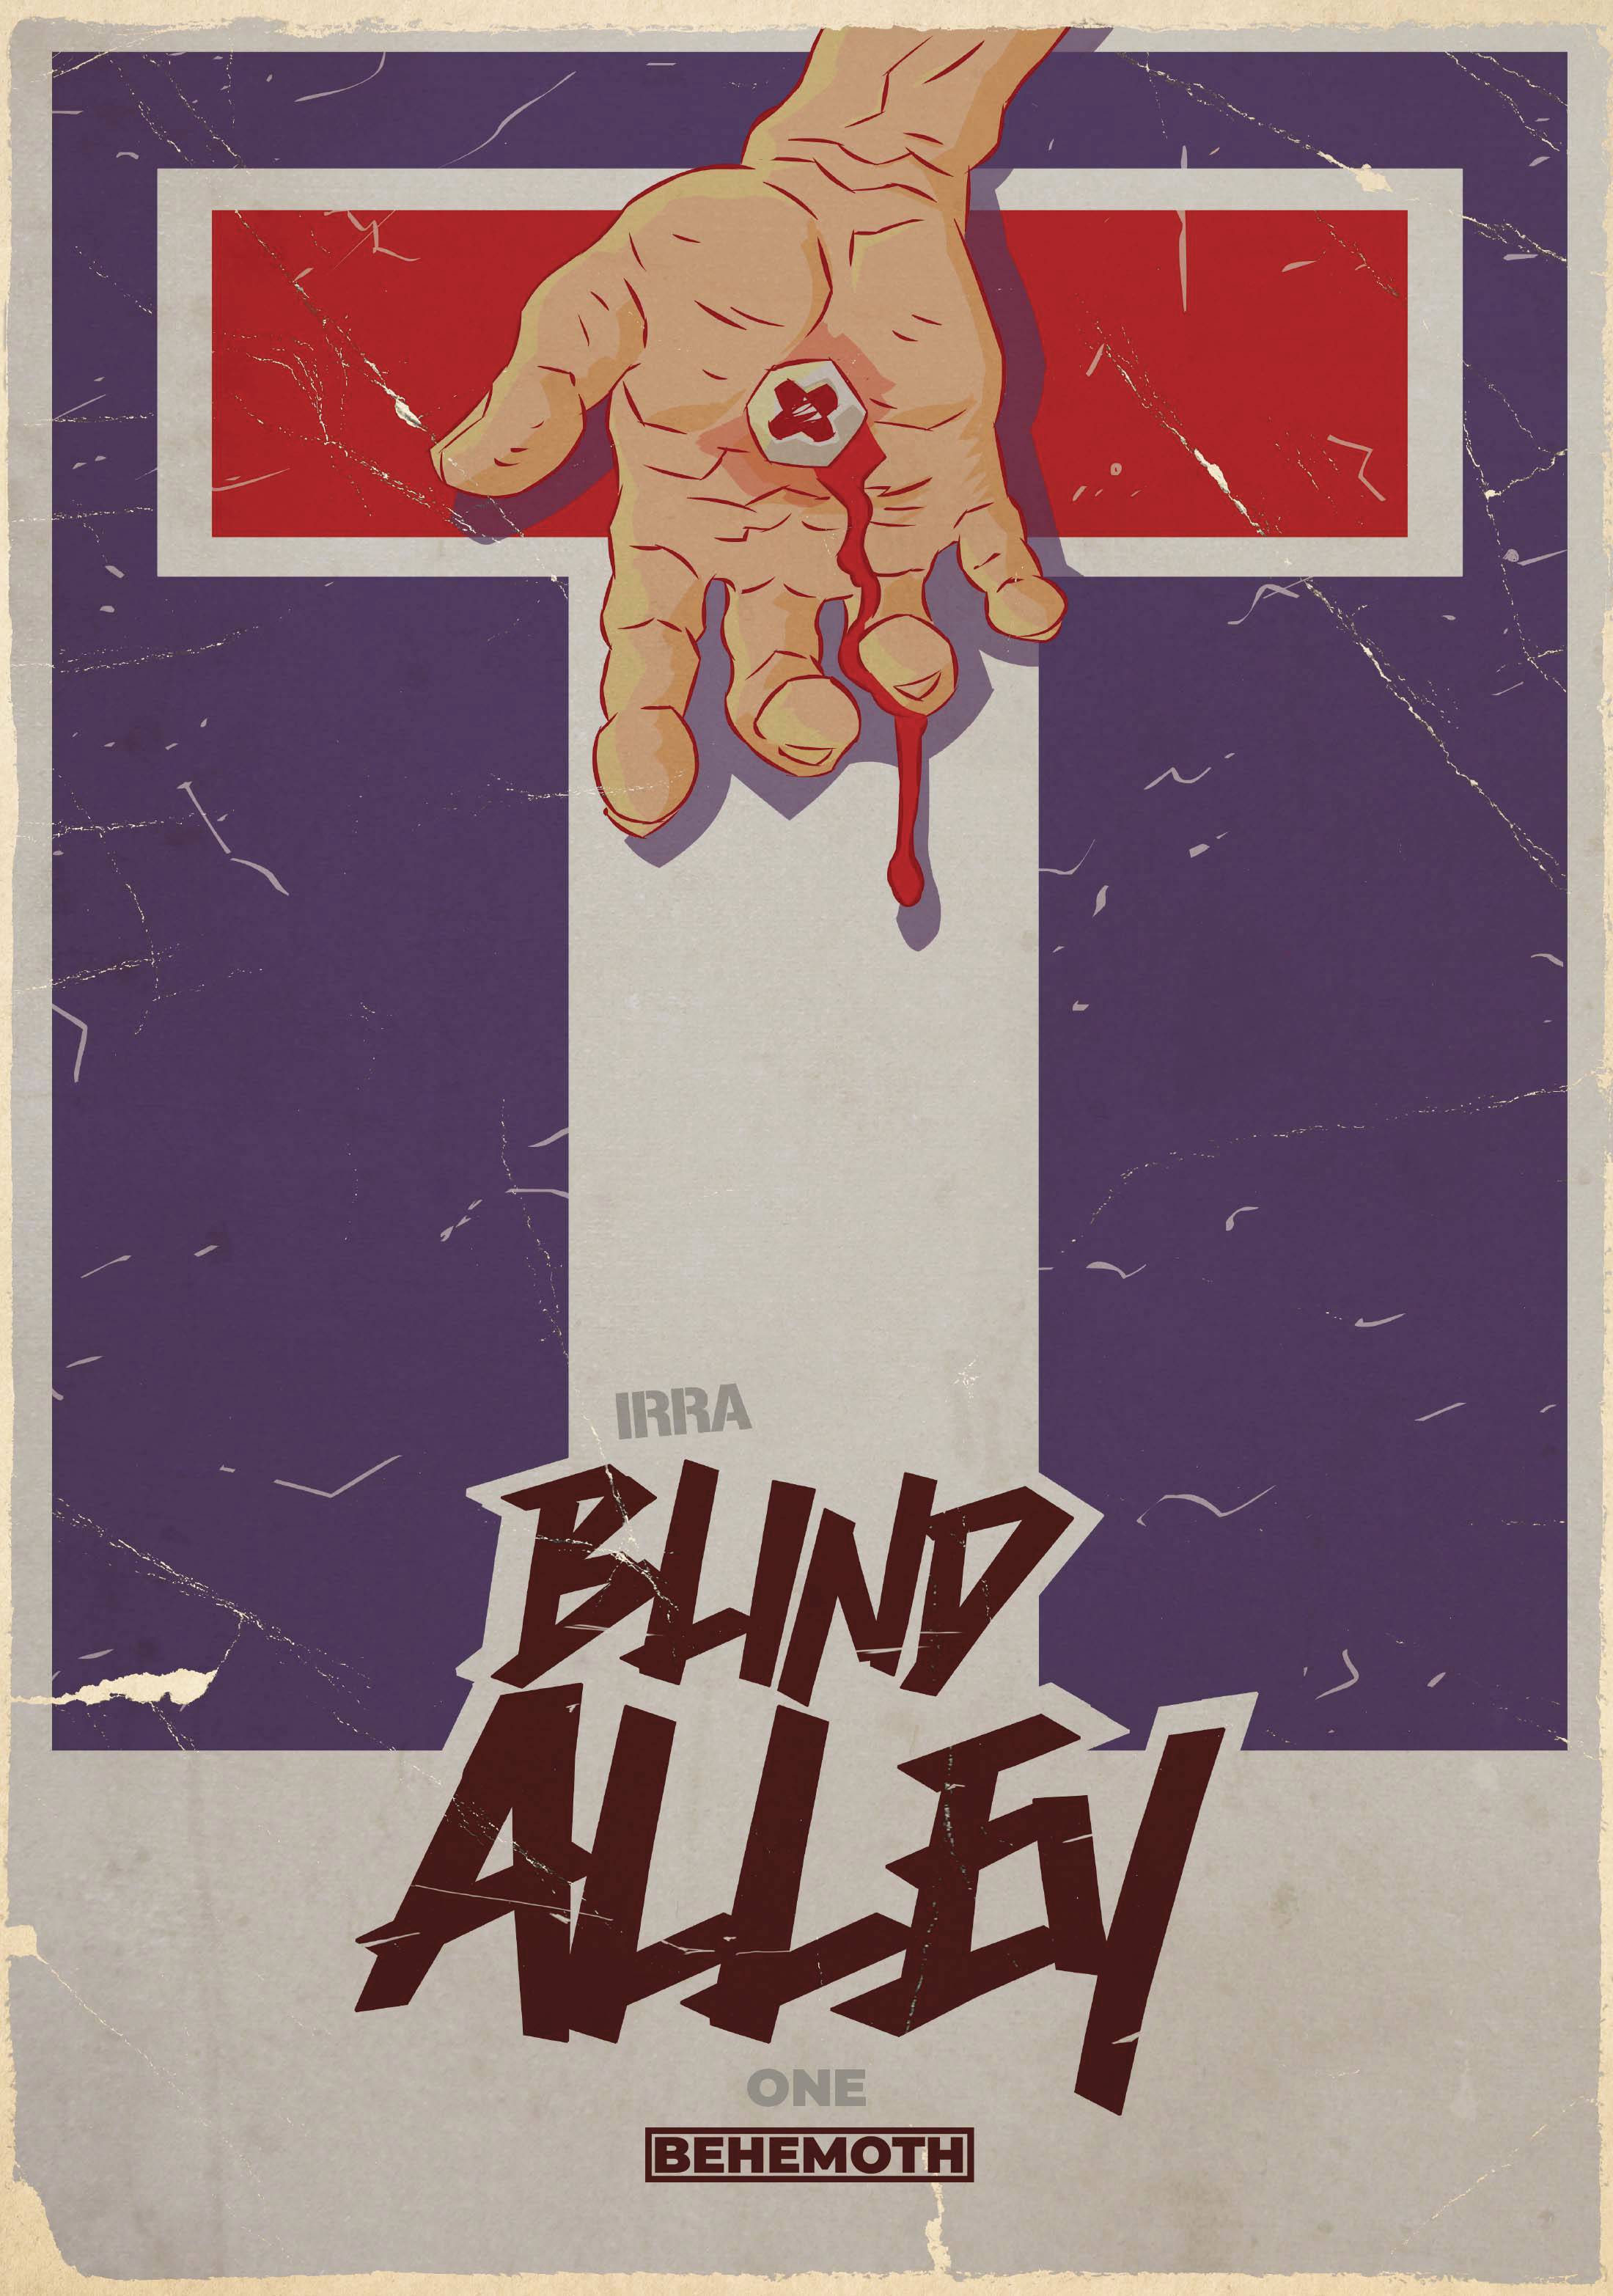 BLIND ALLEY